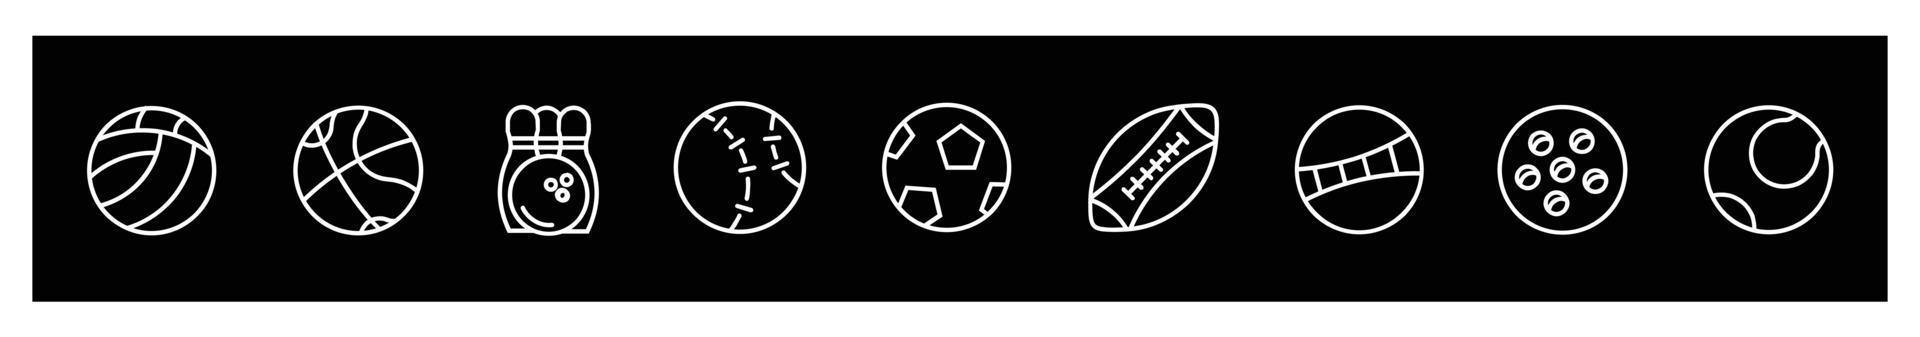 ballsportikonen eingestellt, ballikone dünne linie umreiß lineares sportballsymbol für logo.für design auf schwarzem hintergrund. vektor